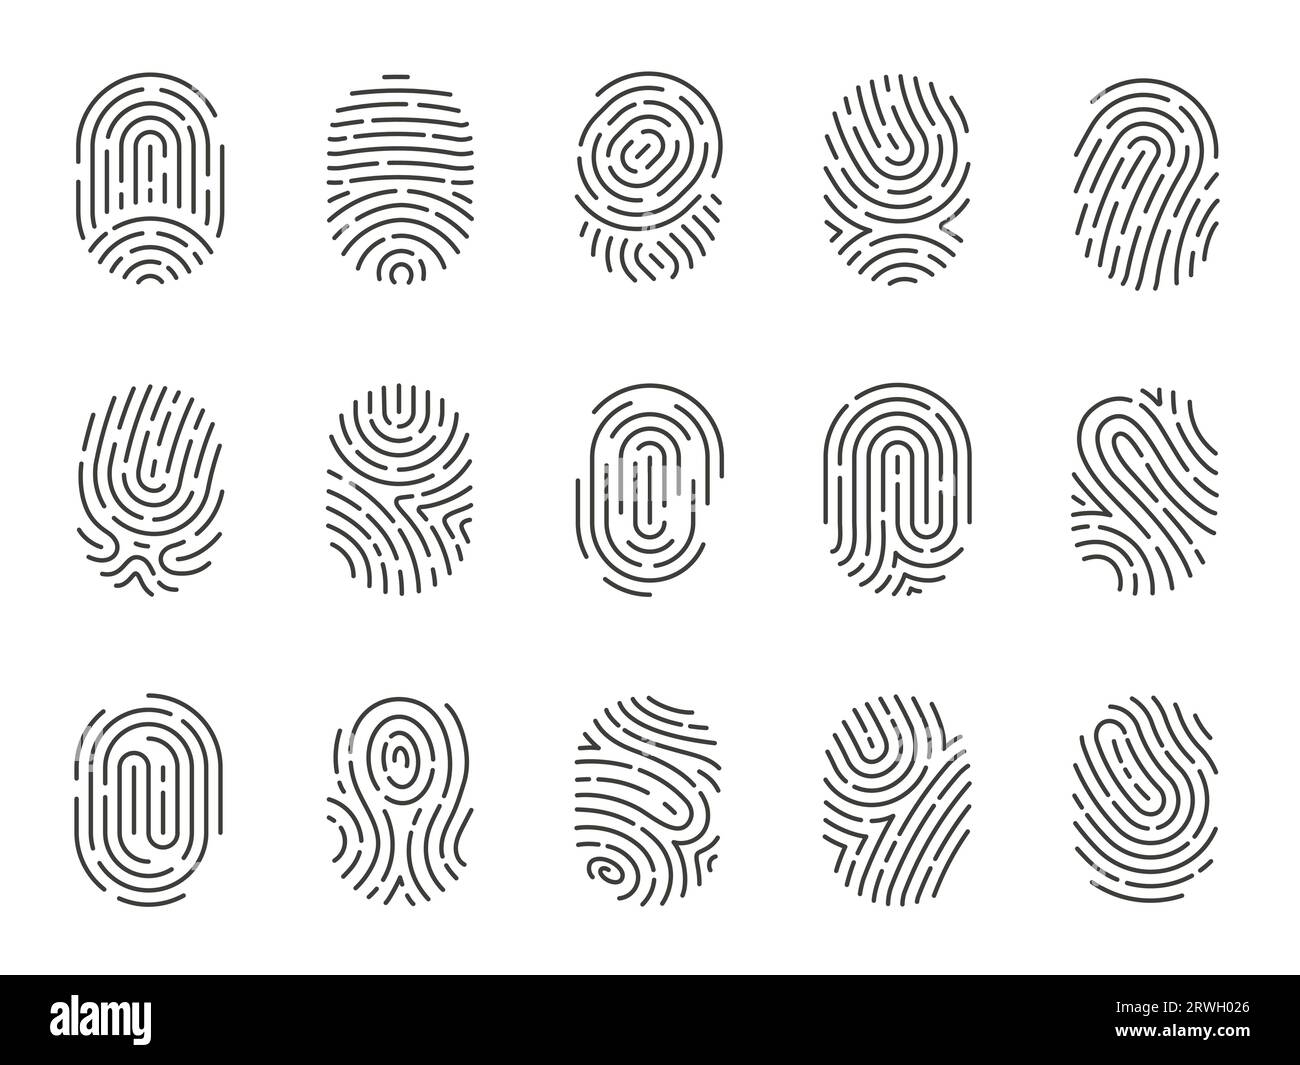 Icone delle impronte digitali. Icone di impronte digitali e impronte digitali per la sicurezza e le indagini, protezione biometrica dell'id e privacy. Raccolta vettoriale piatta Illustrazione Vettoriale